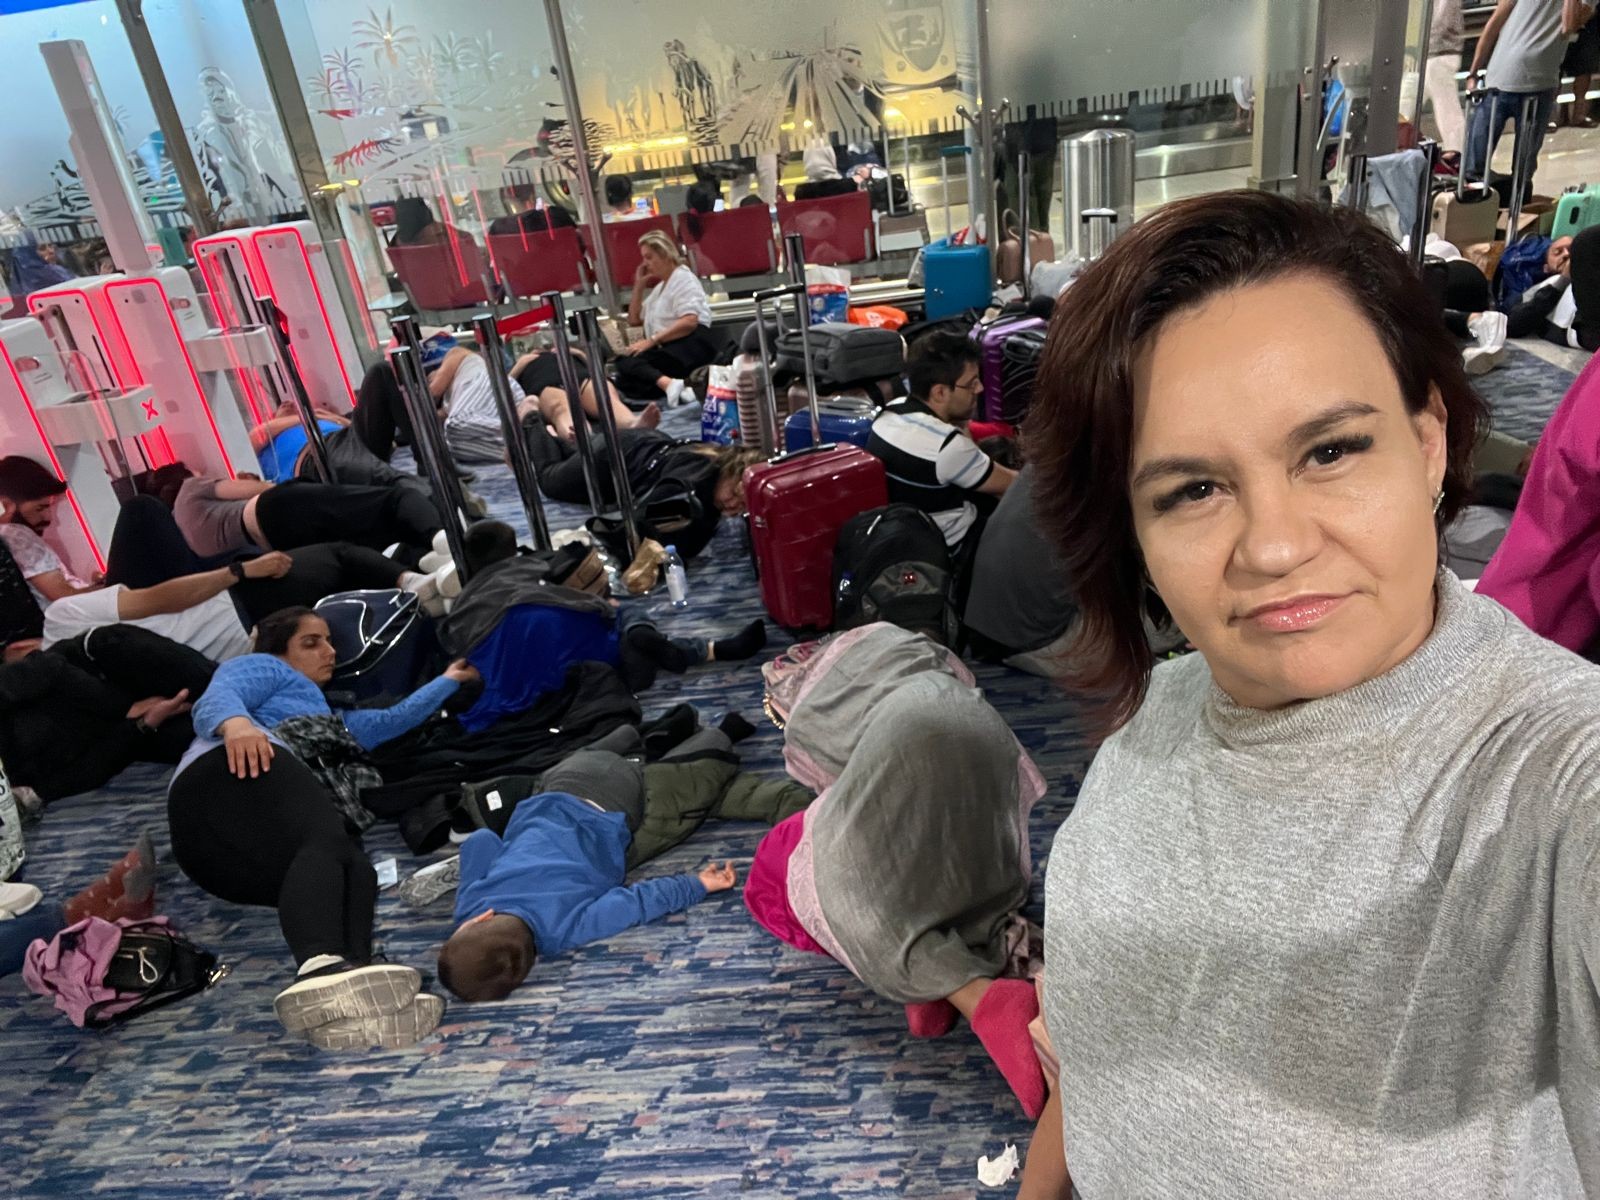 Com voo cancelado após temporal, brasileiros ficam presos em aeroporto de Dubai: 'Tivemos que dormir no chão'